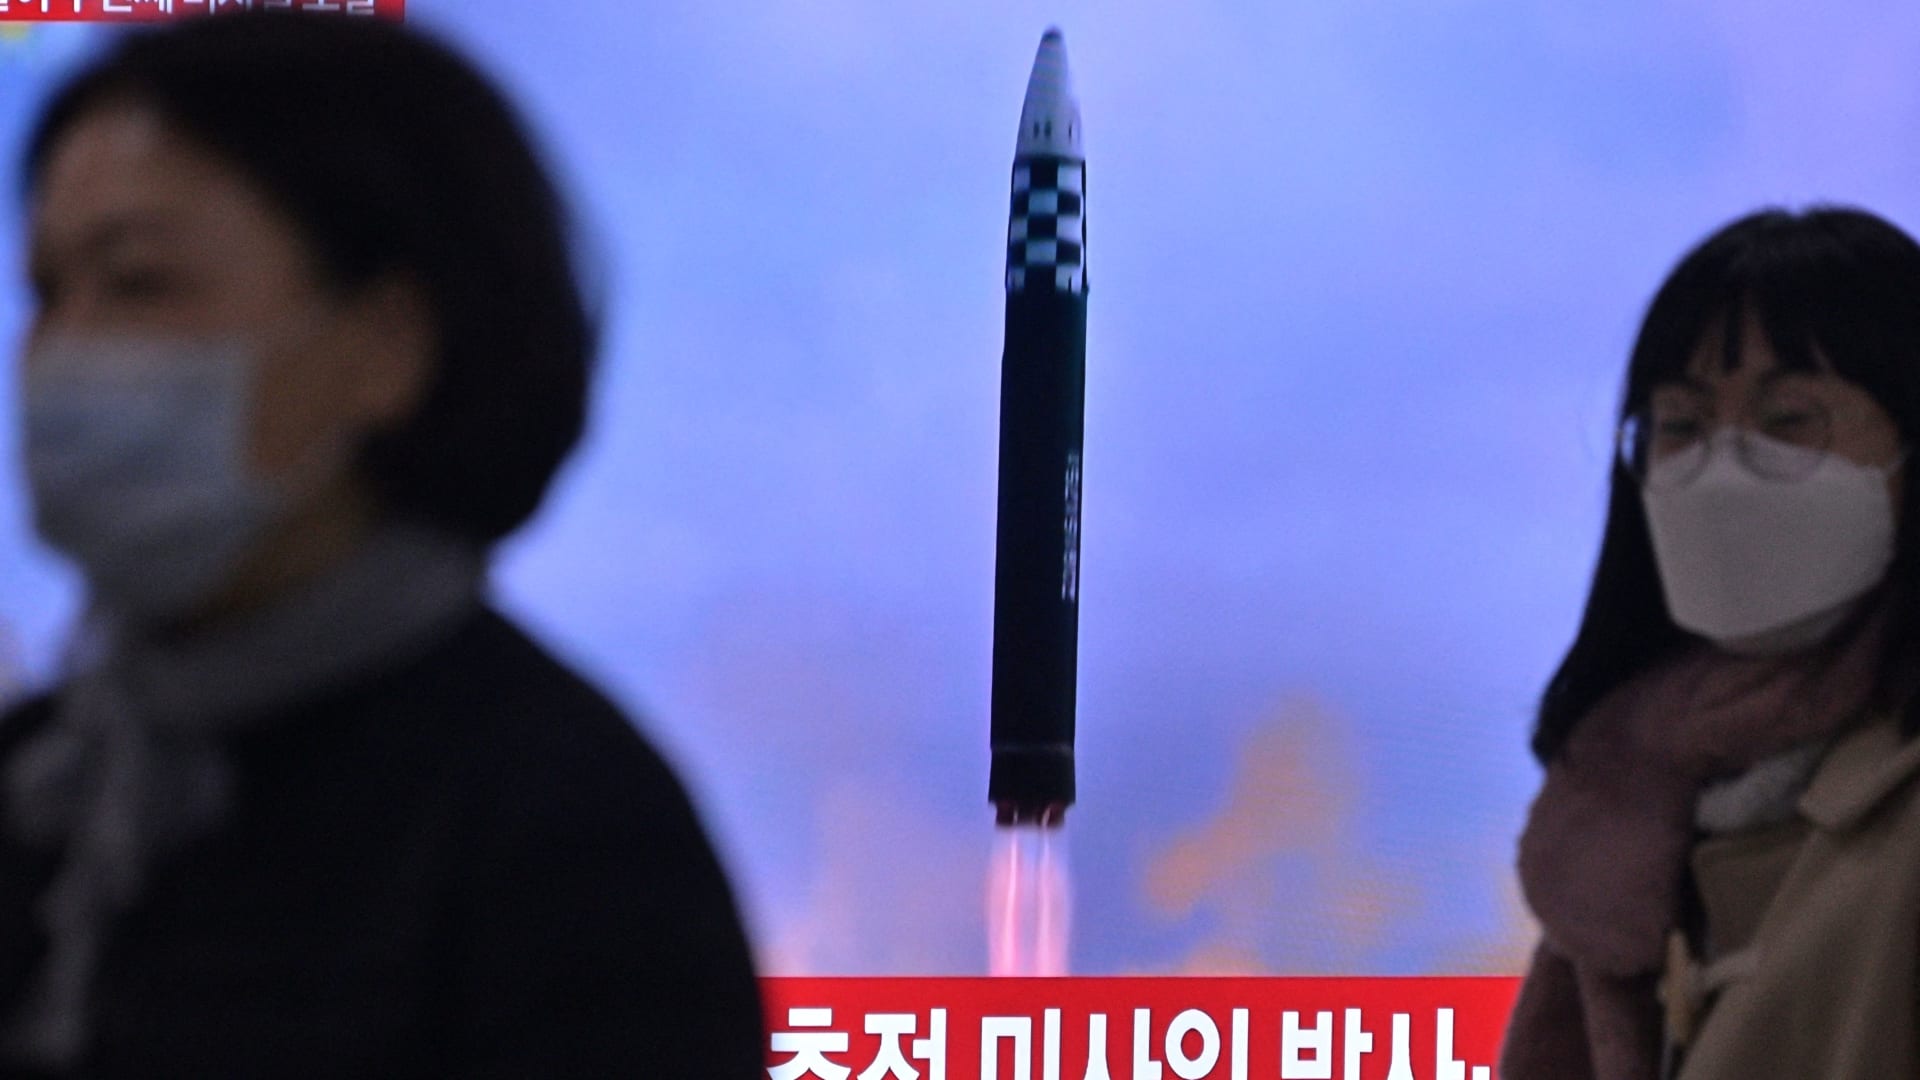 كوريا الشمالية تطلق صاروخا باليستيا..واليابان تعلن سقوطه في منطقتها الاقتصادية